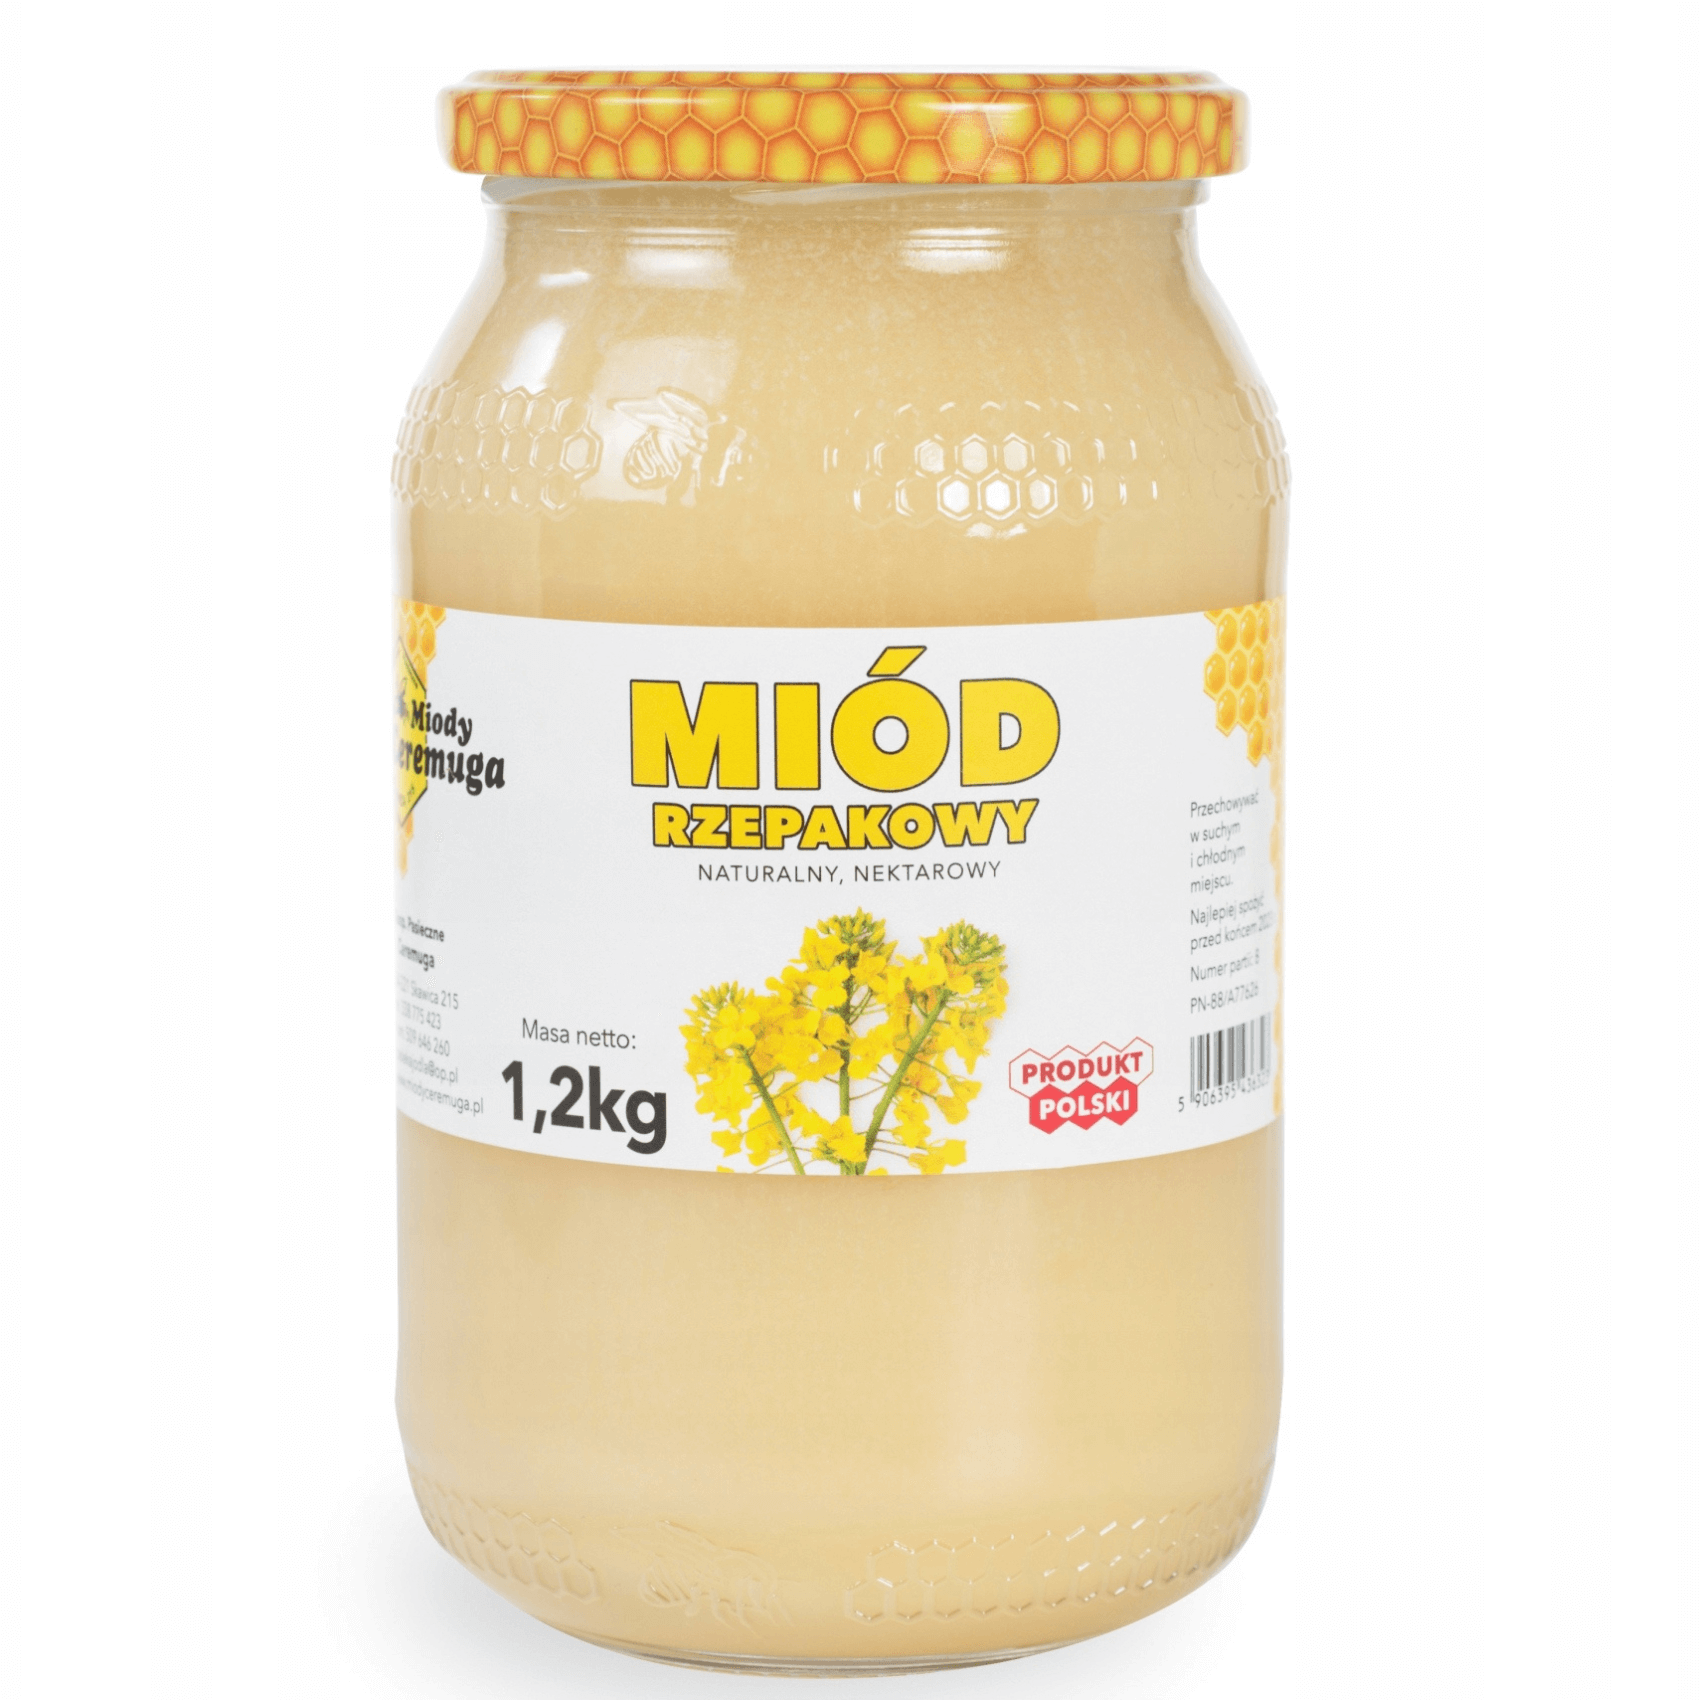 Miód rzepakowy 1,2 kg - Miody Ceremuga